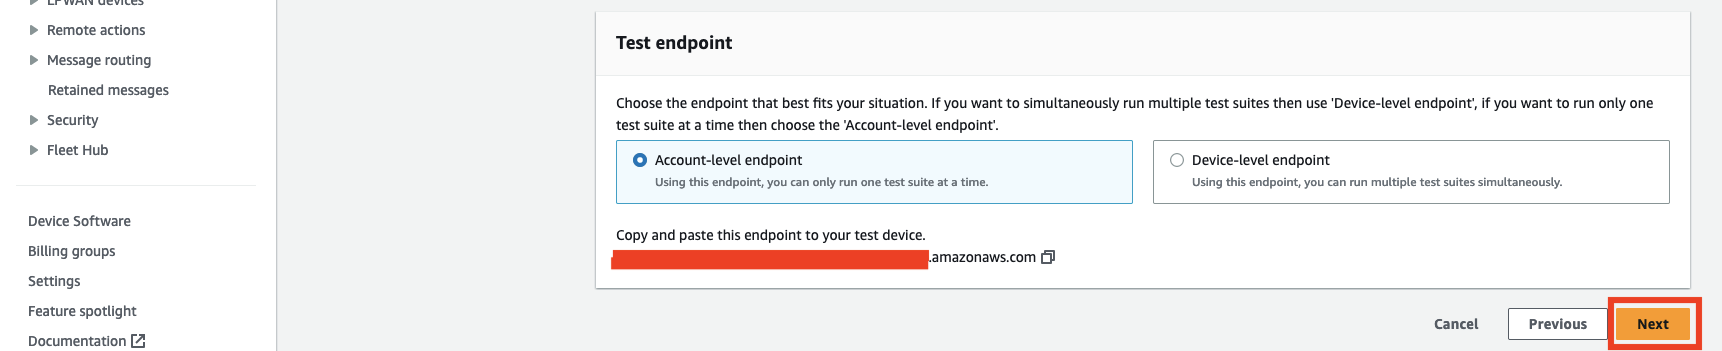 Opções para selecionar o endpoint no nível da conta ou no nível do dispositivo para teste, com uma URL de endpoint fornecida e o botão Avançar.